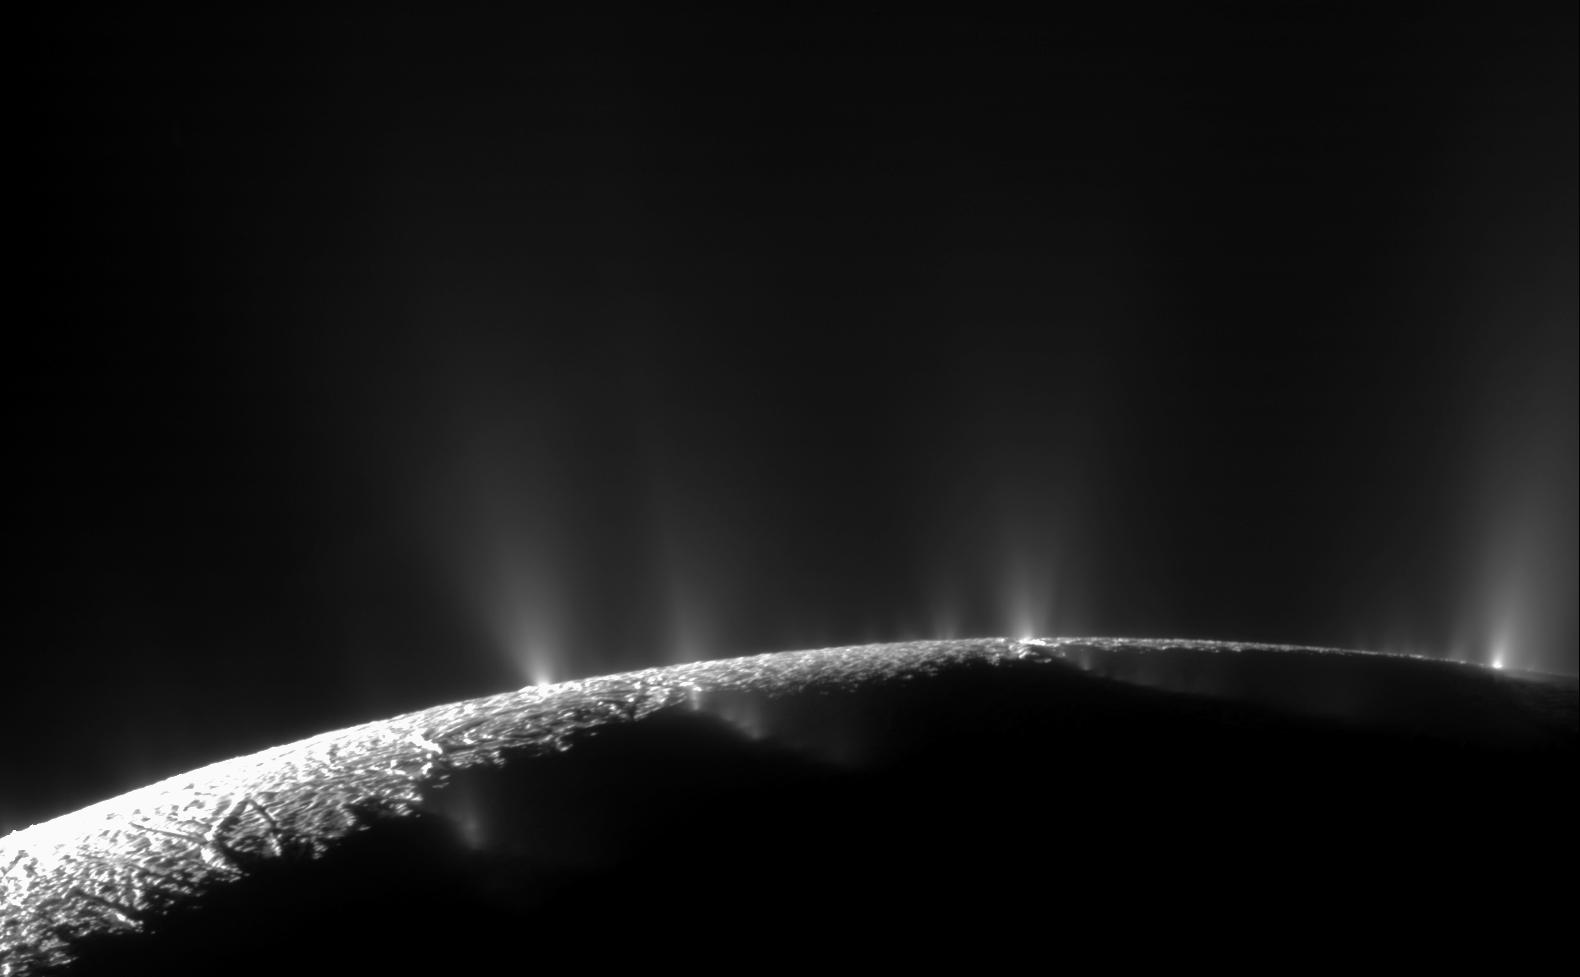 Saturn's moon Enceladus in November 2009